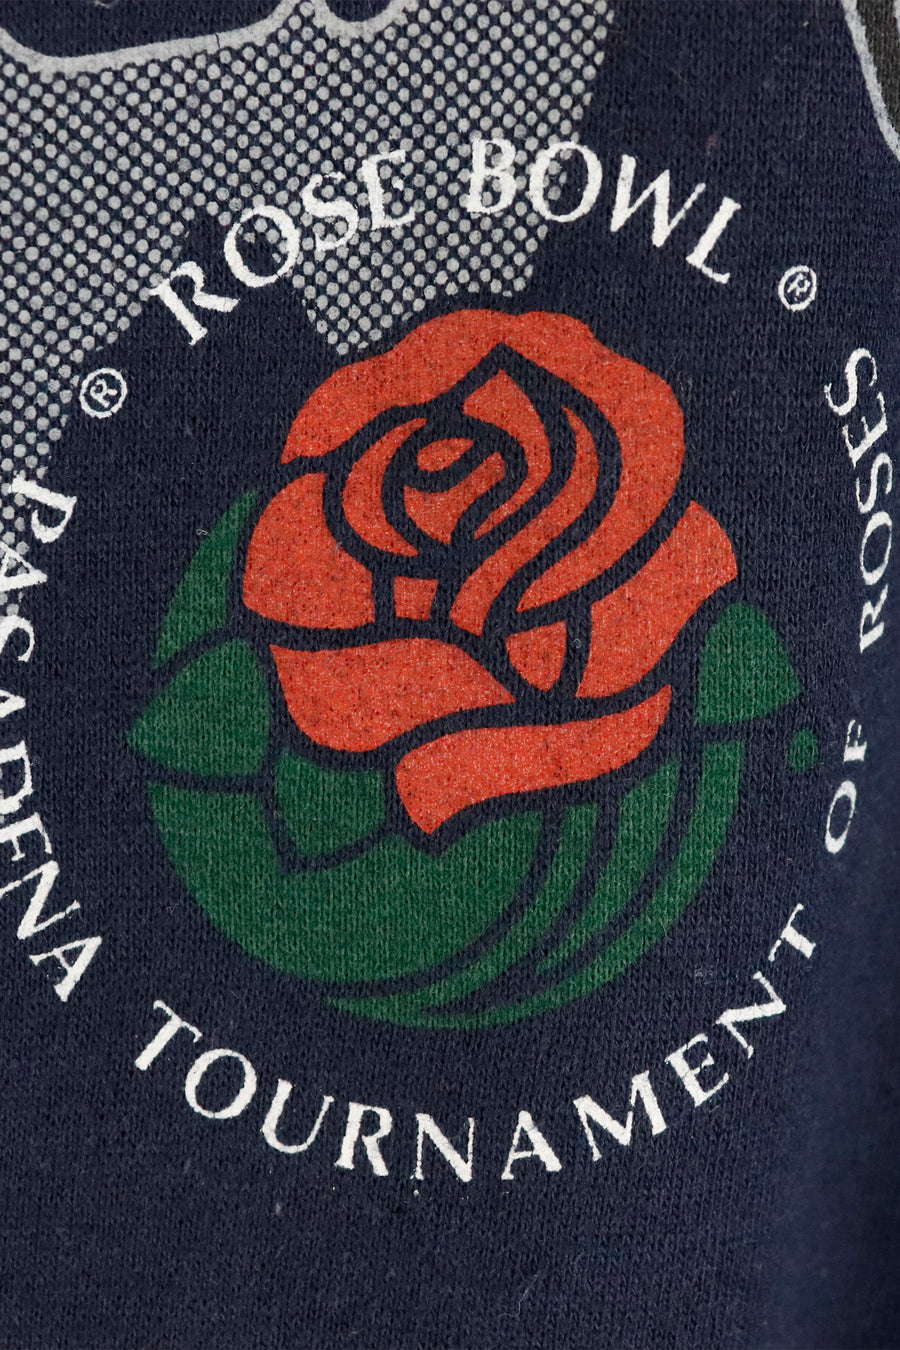 Vintage 1995 PSU Rose Bowl Sweatshirt Sz M